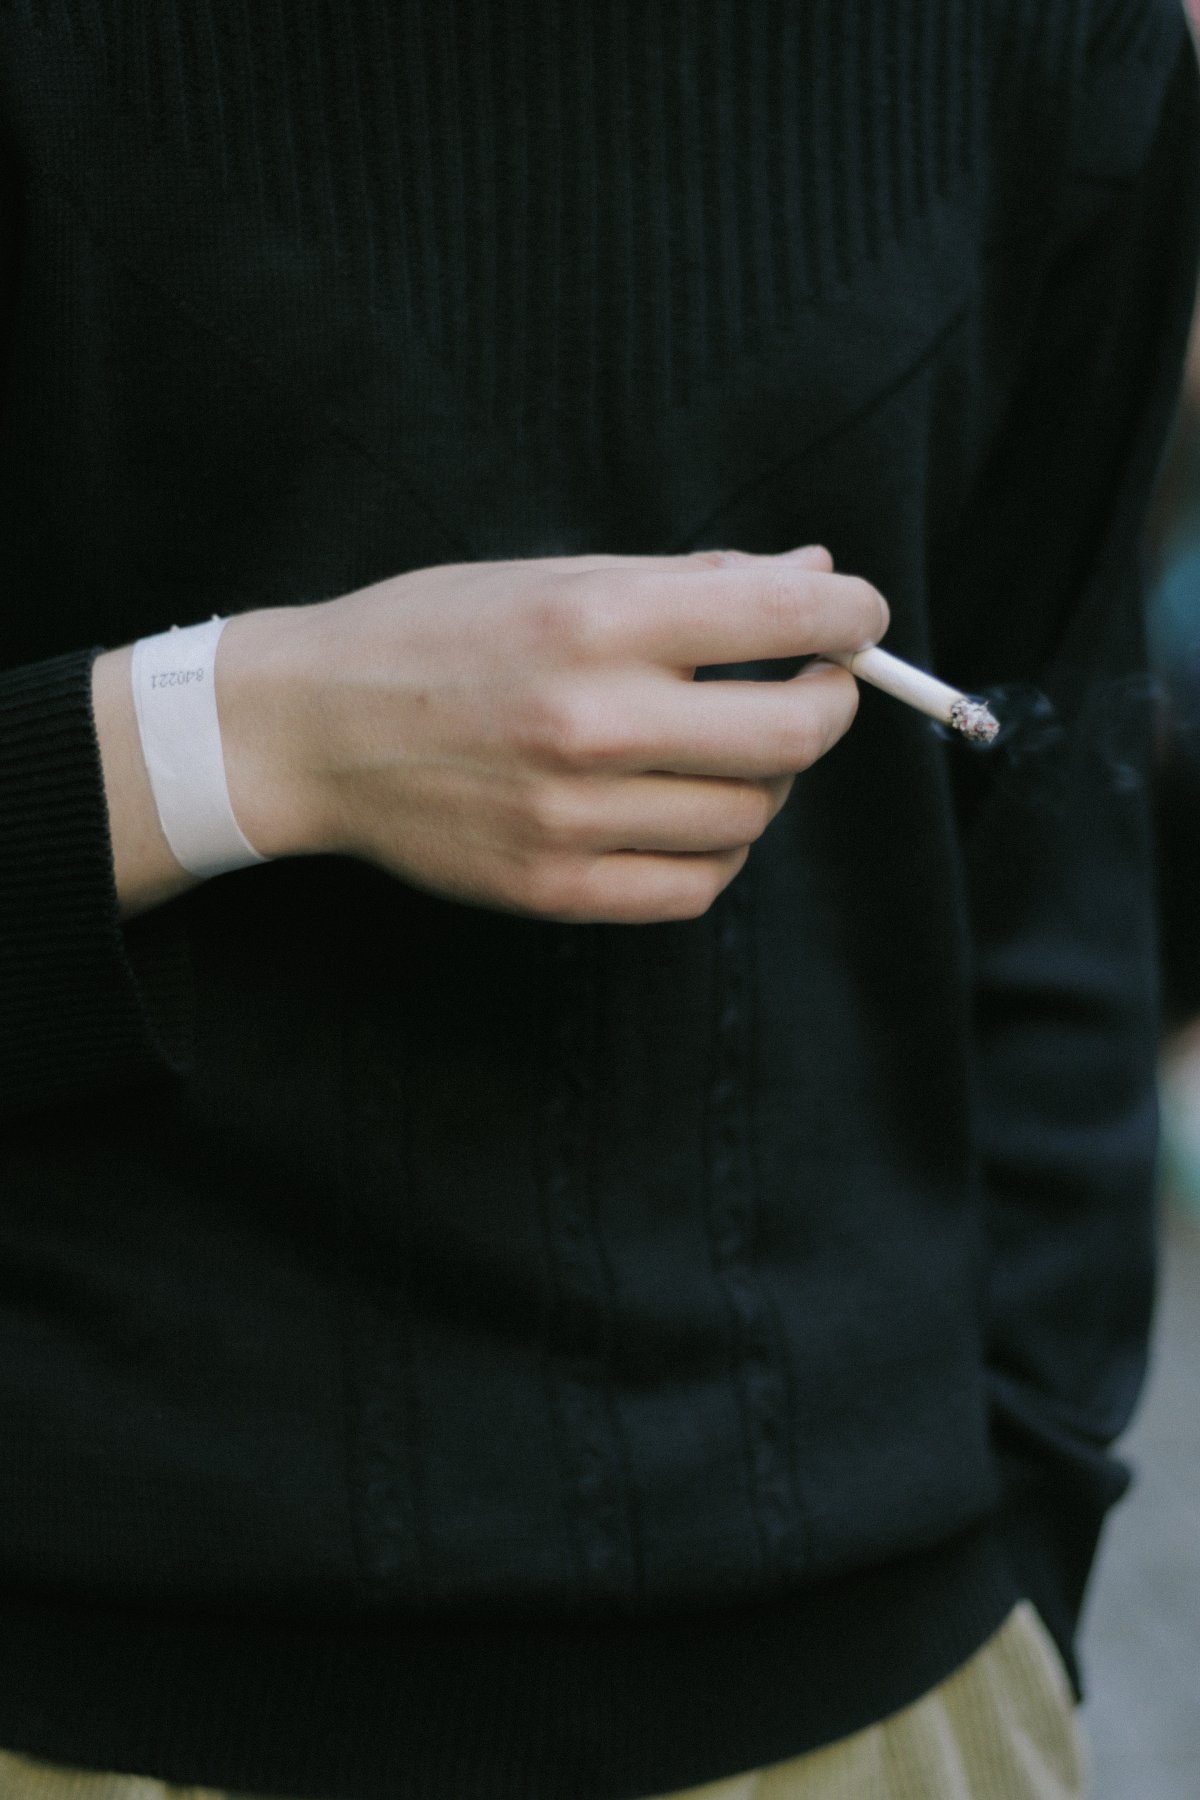 手里叼烟的图片真实图图片